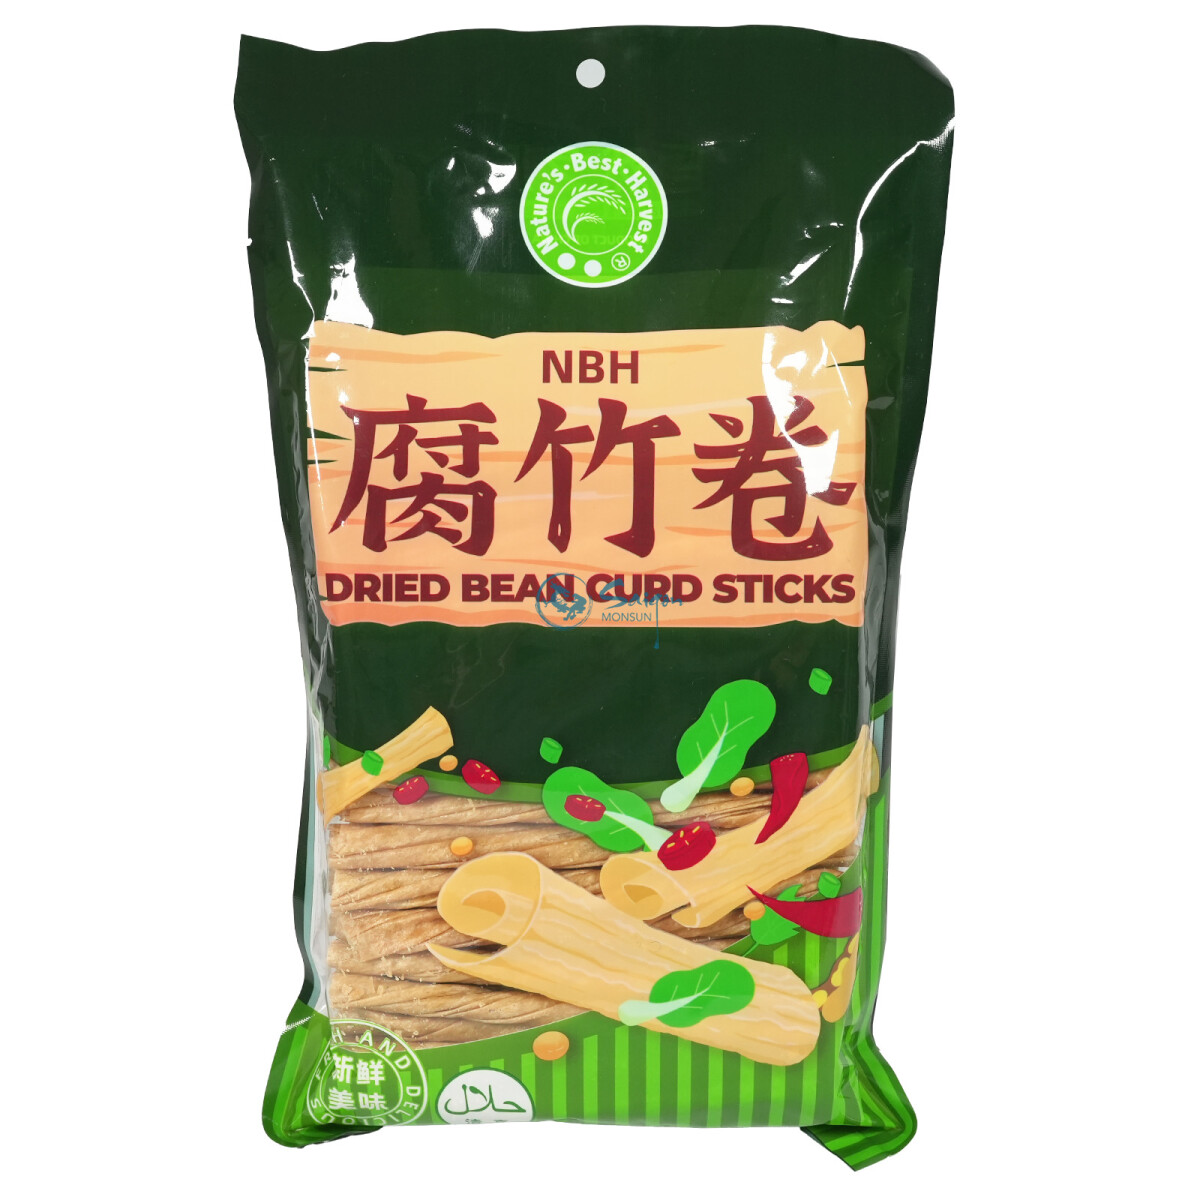 NBH Dried Bean Curd Sticks Tofuhaut  300g